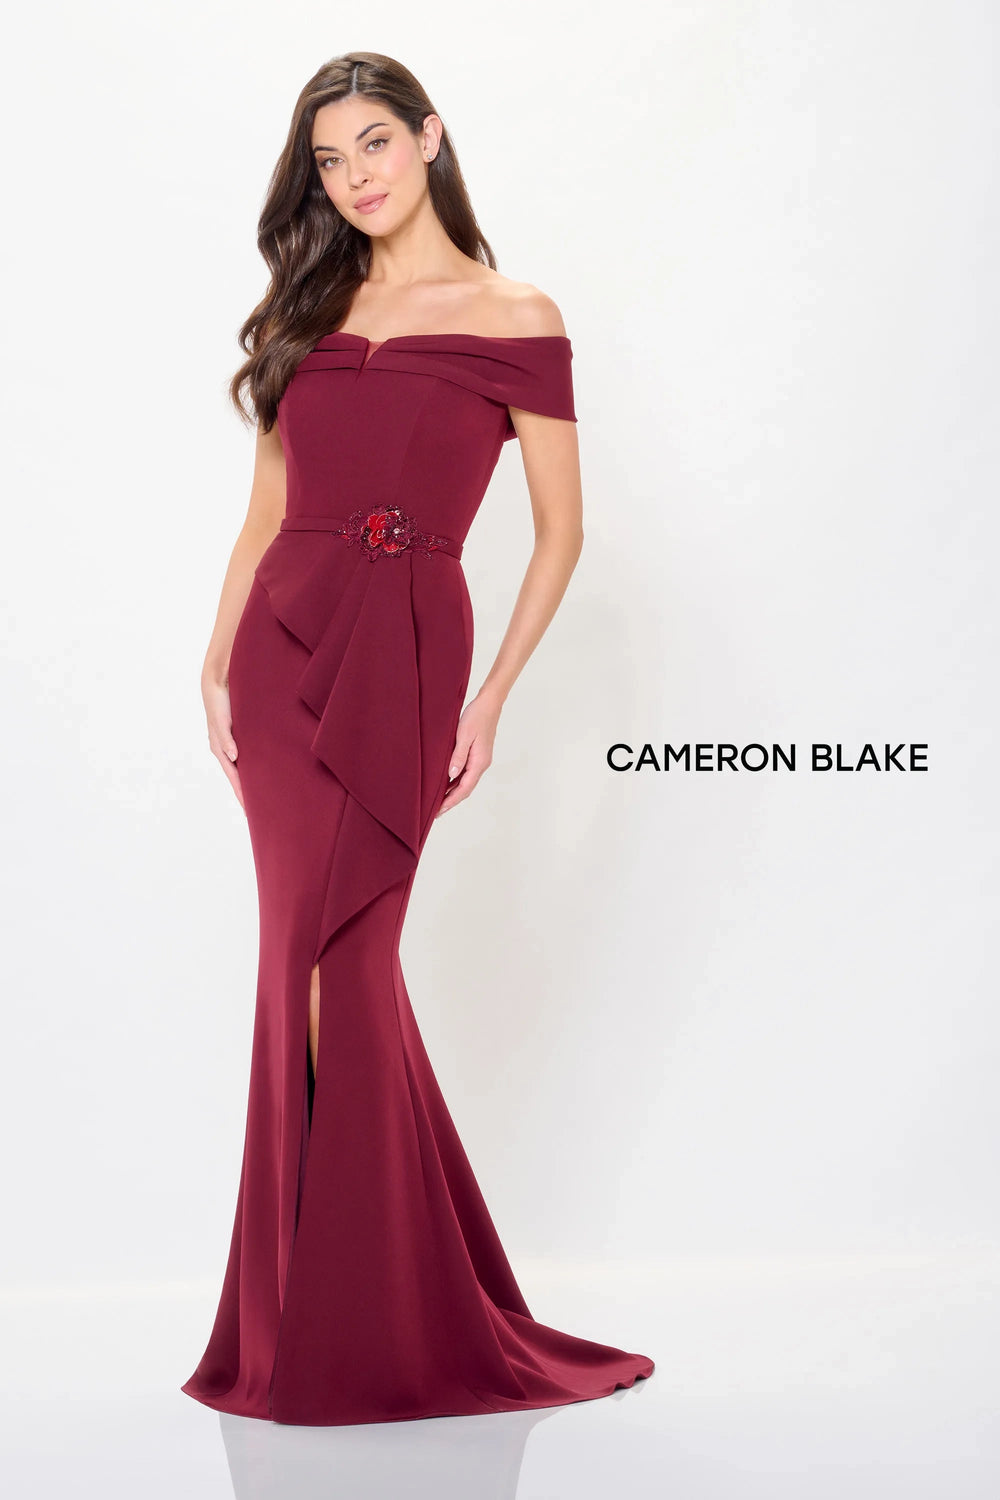 Mon Cheri Cameron Blake Dress Mon Cheri Cameron Blake CB3234 Dress